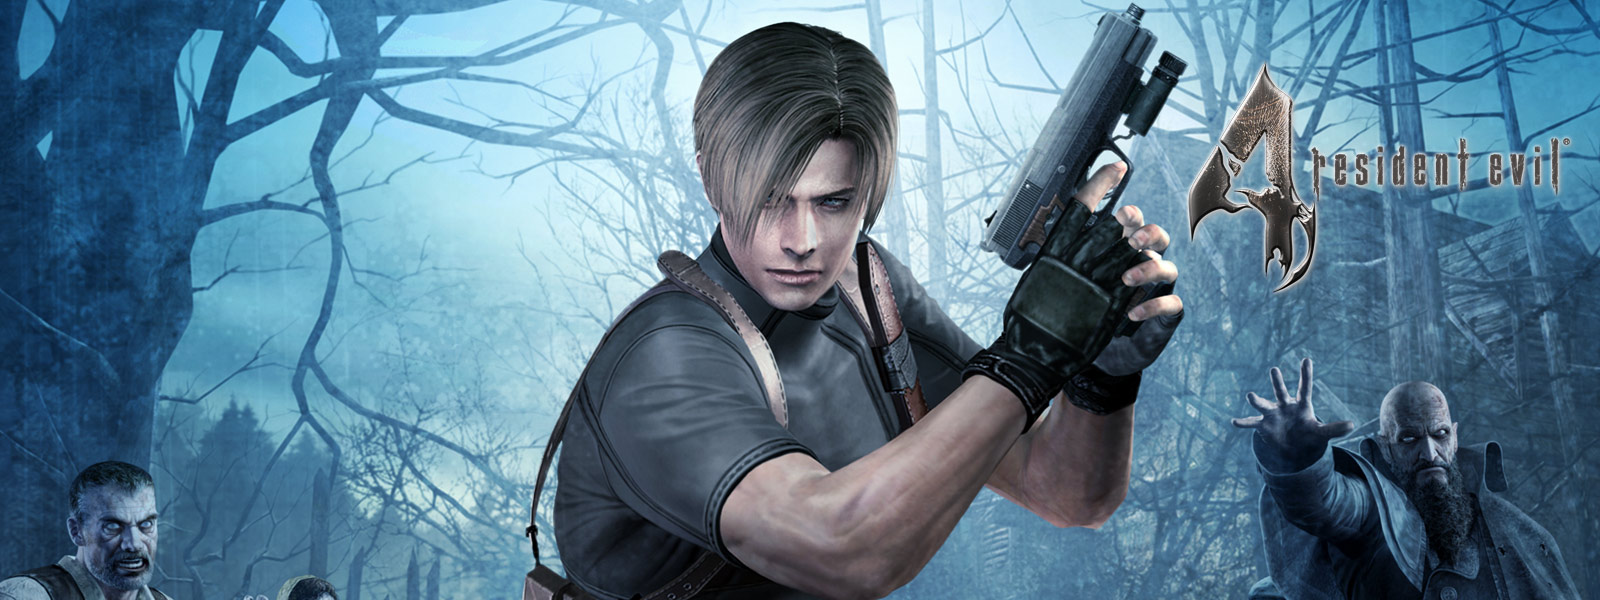 어두운 숲에서 좀비에 둘러싸인 채 총을 들고 있는 Resident Evil 4 캐릭터